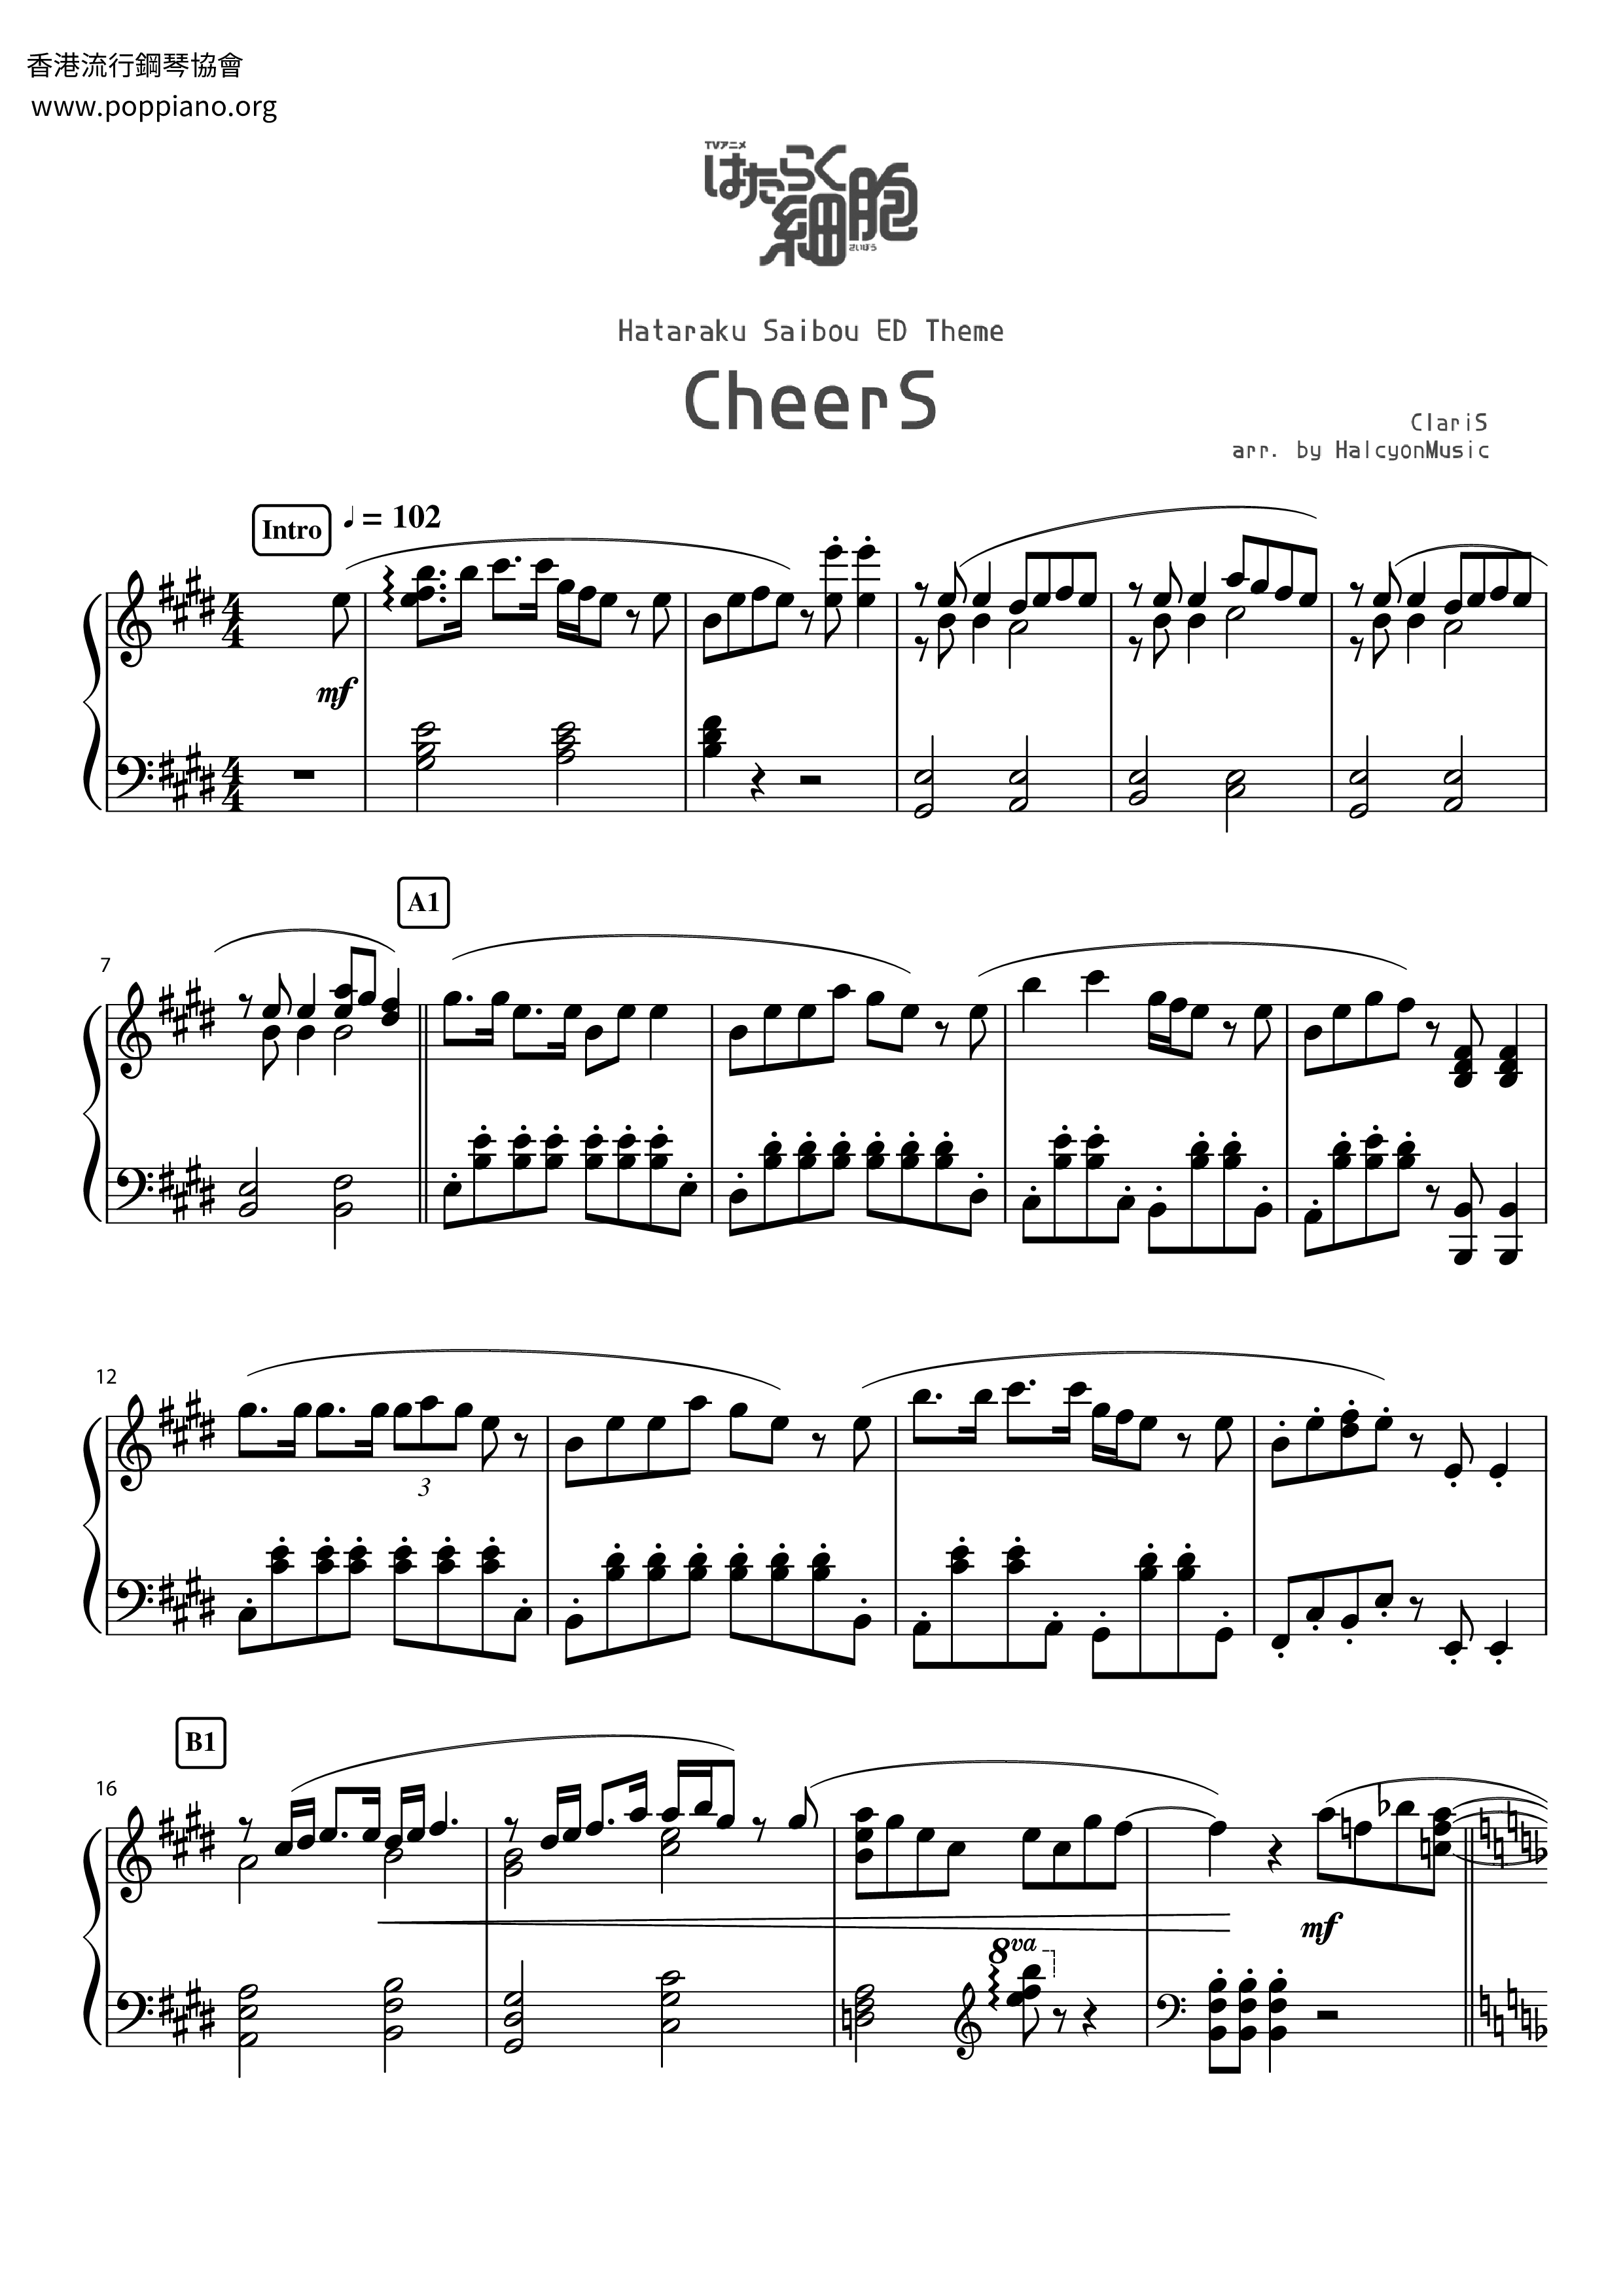 CheerS Score